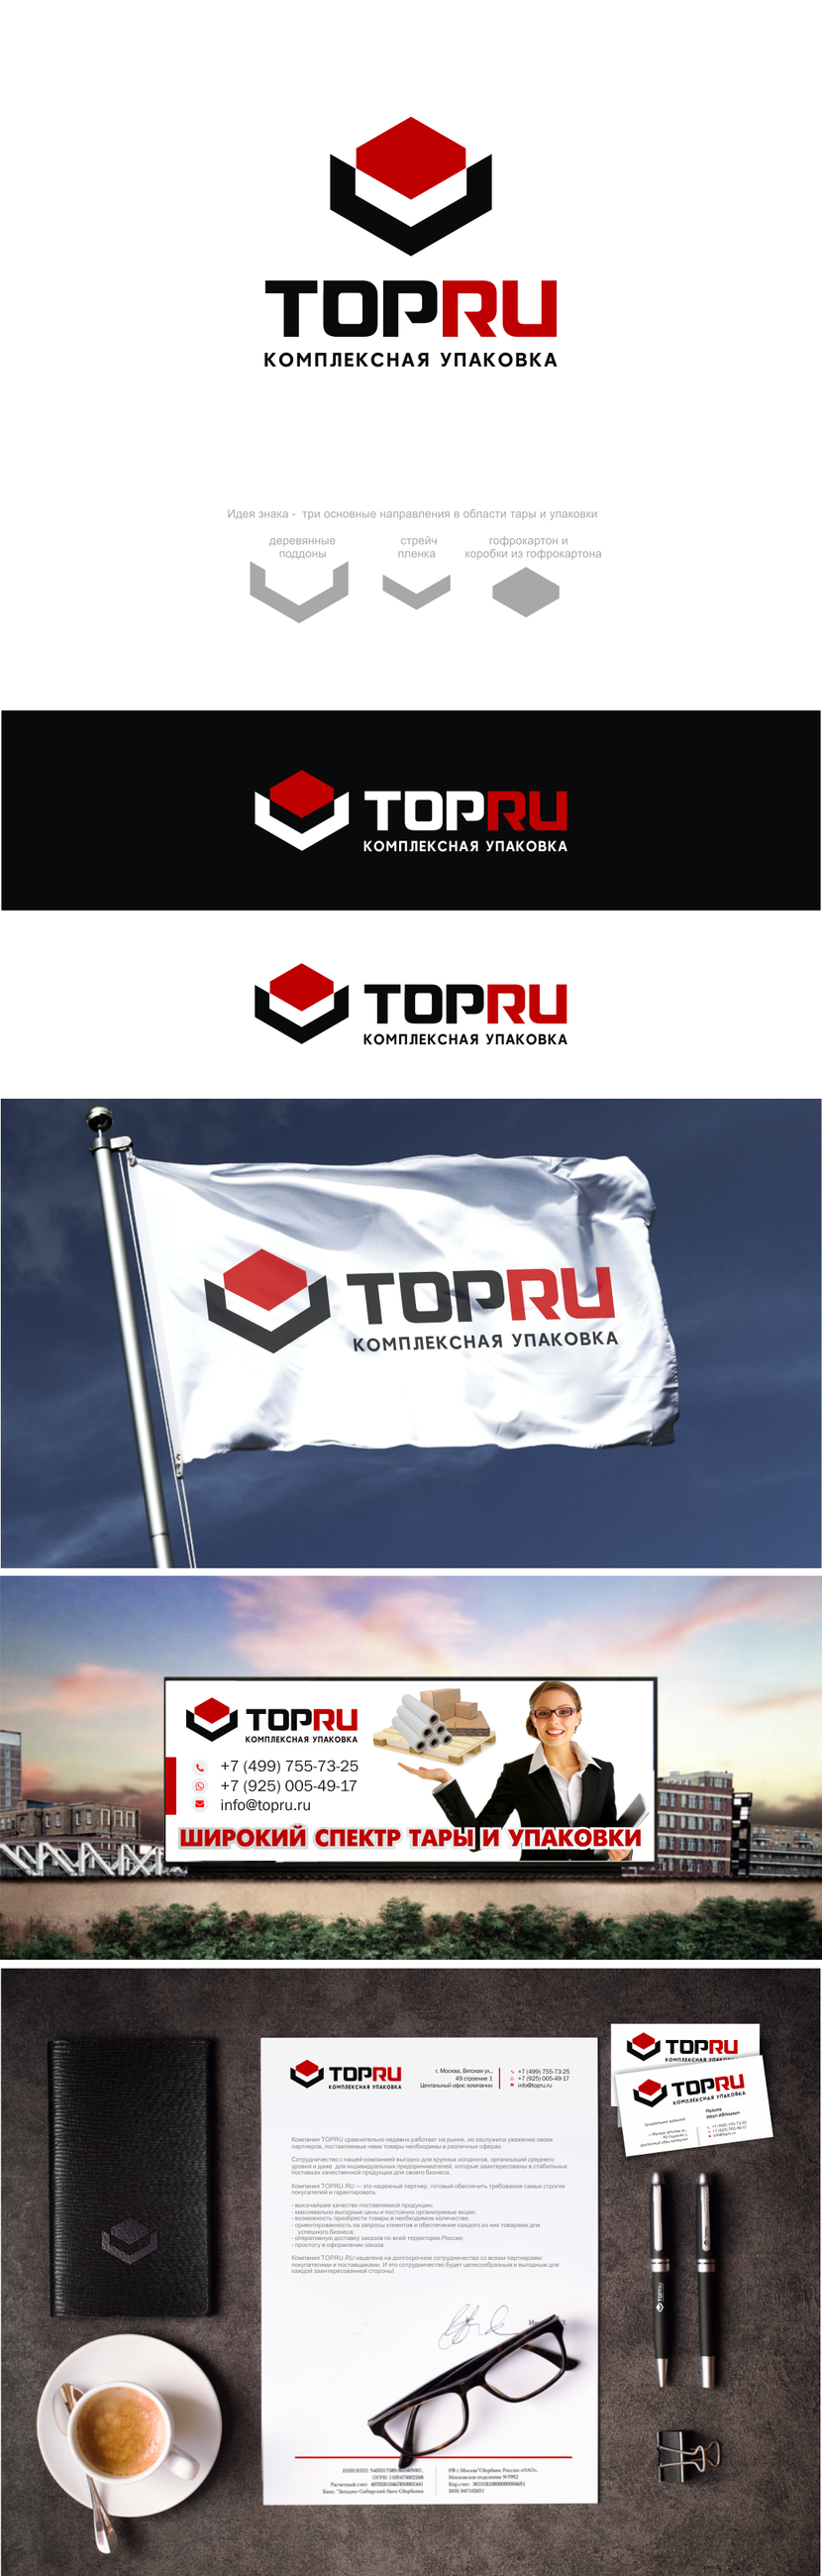 v - Разработка логотипа и фирменого стиля компании TopRu